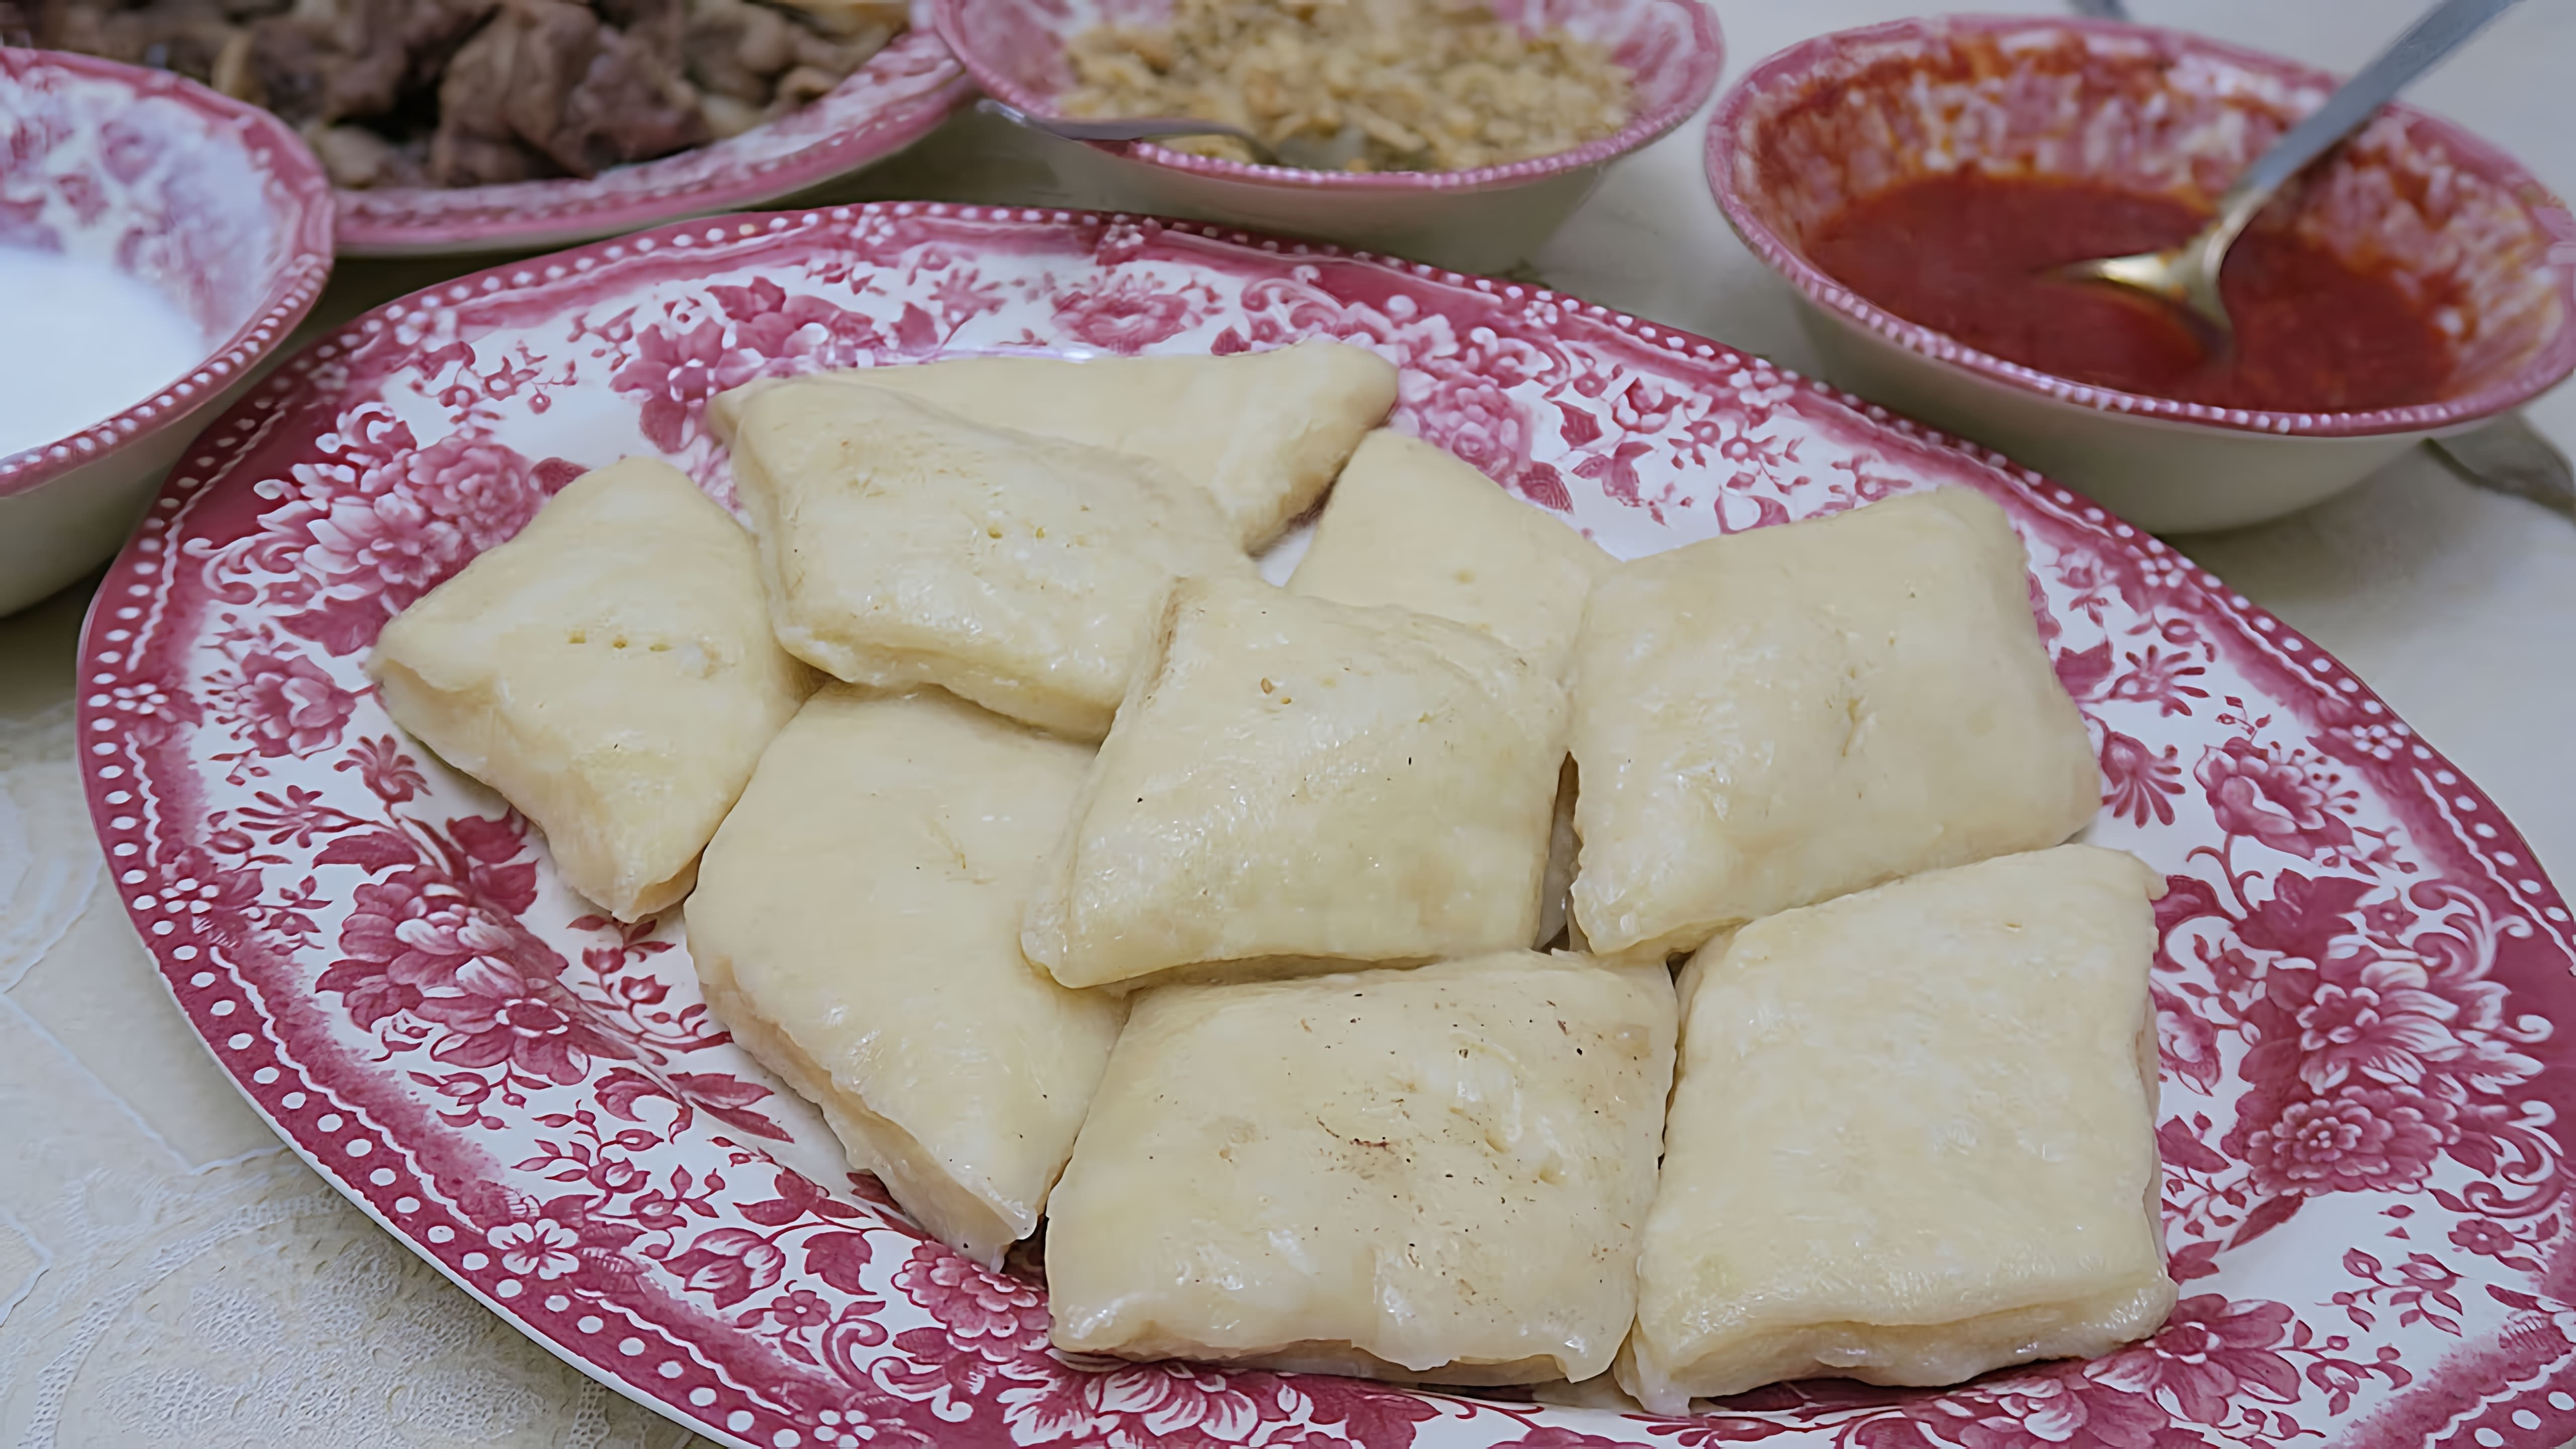 В этом видео показан рецепт аварского хинкала, традиционного блюда кавказской кухни